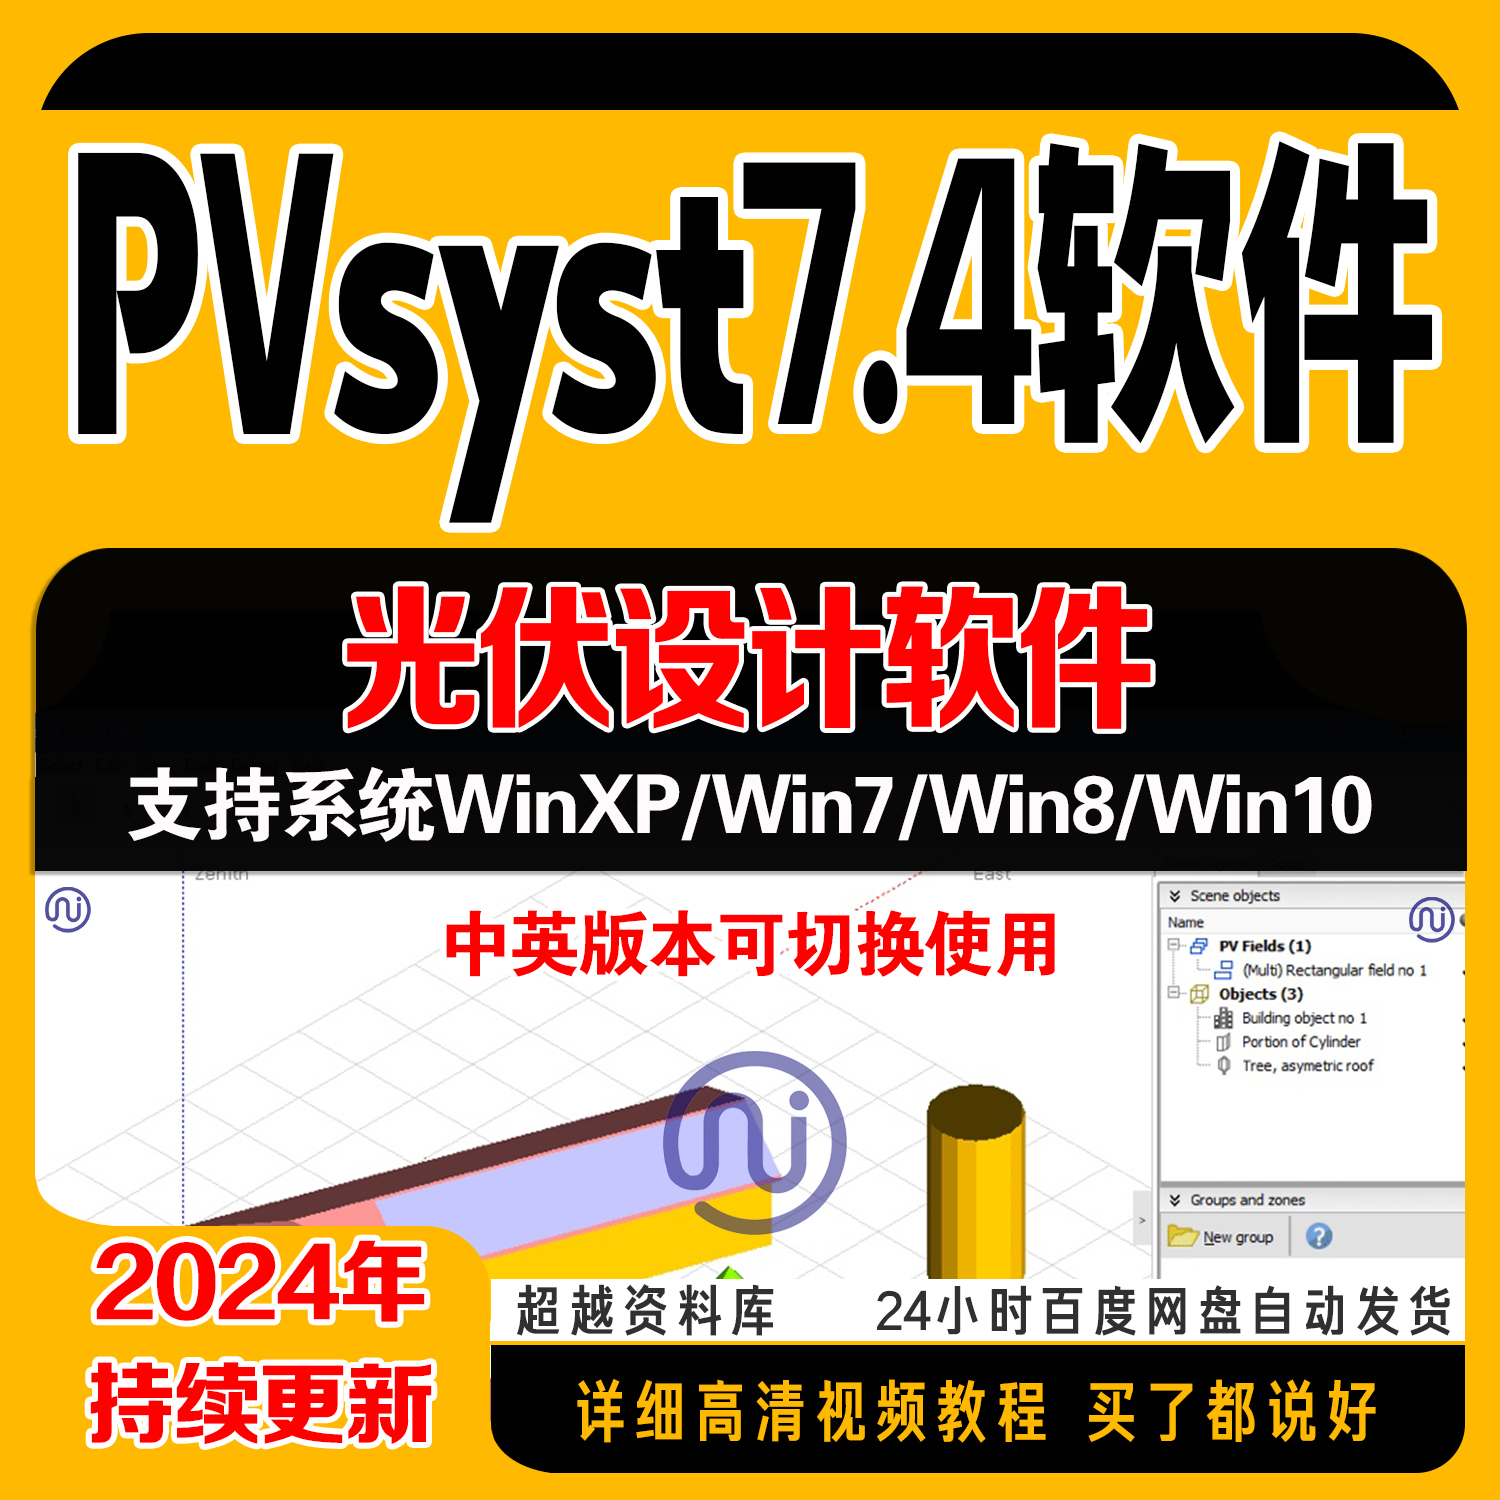 pvsyst7.4软件 光伏设计软件逆变器组件中英文切换 气象数据包